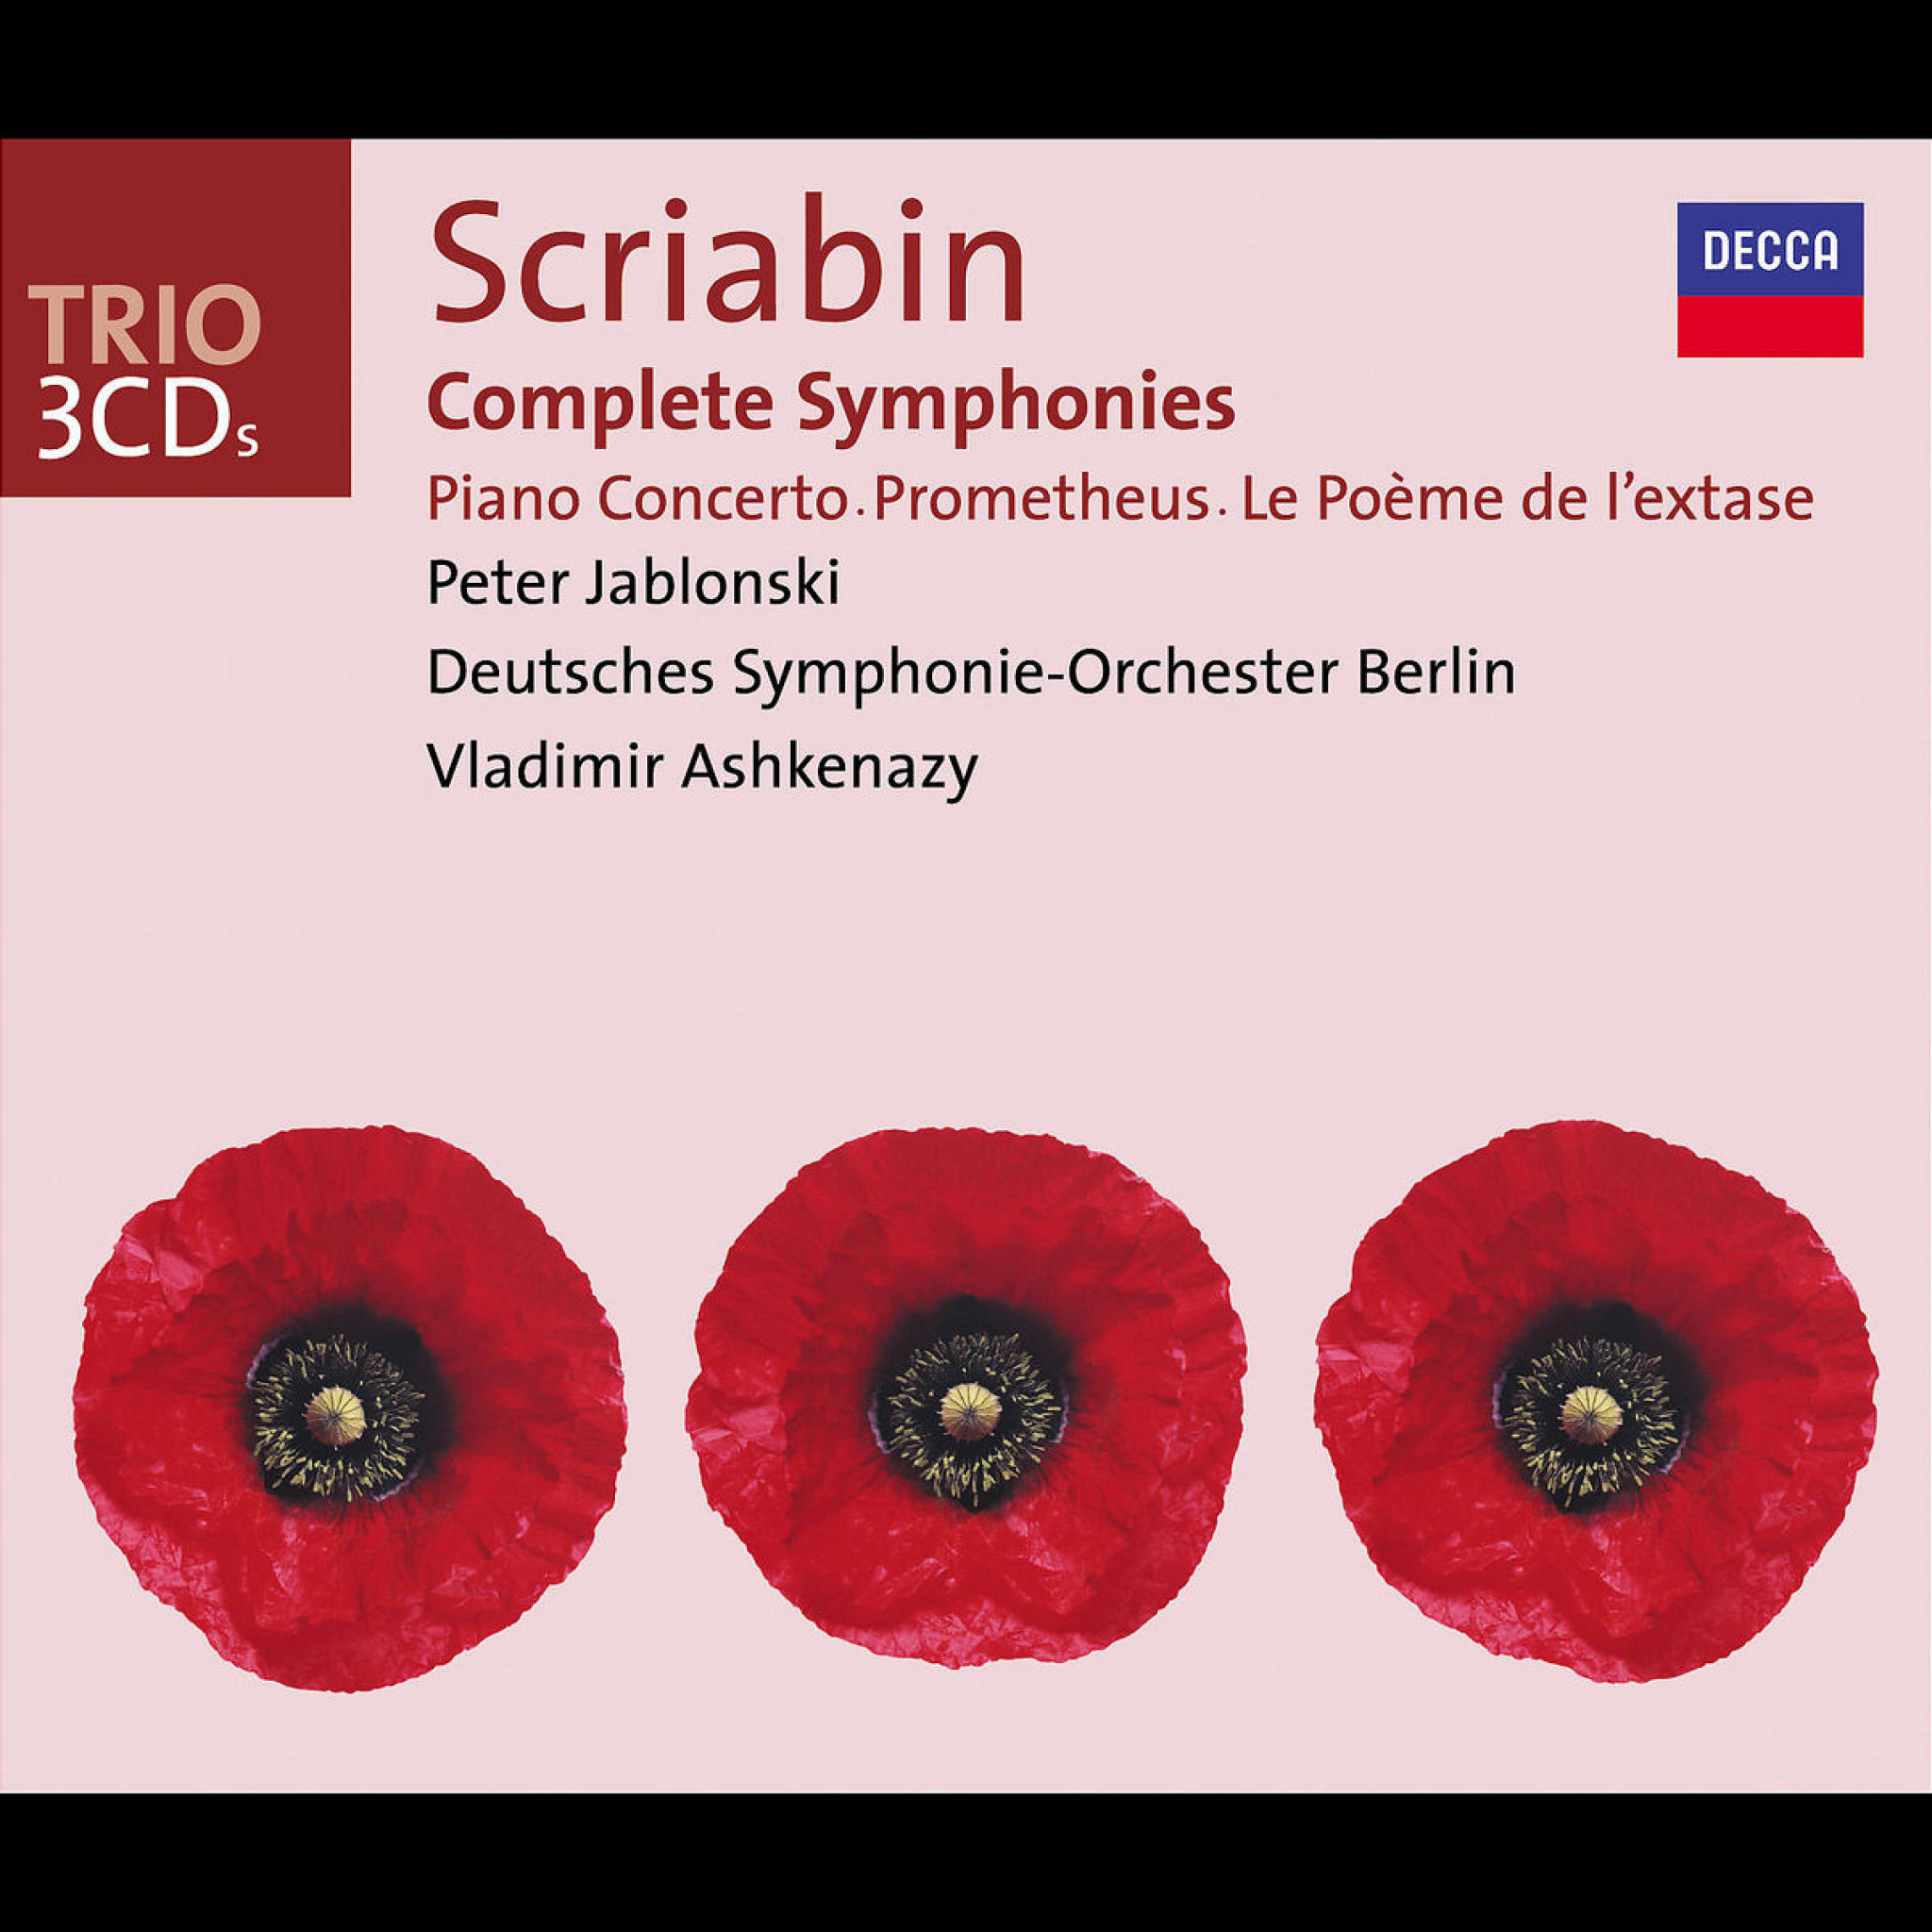 Scriabin: Complete Symphonies / Piano Concerto, etc. 0028947397128